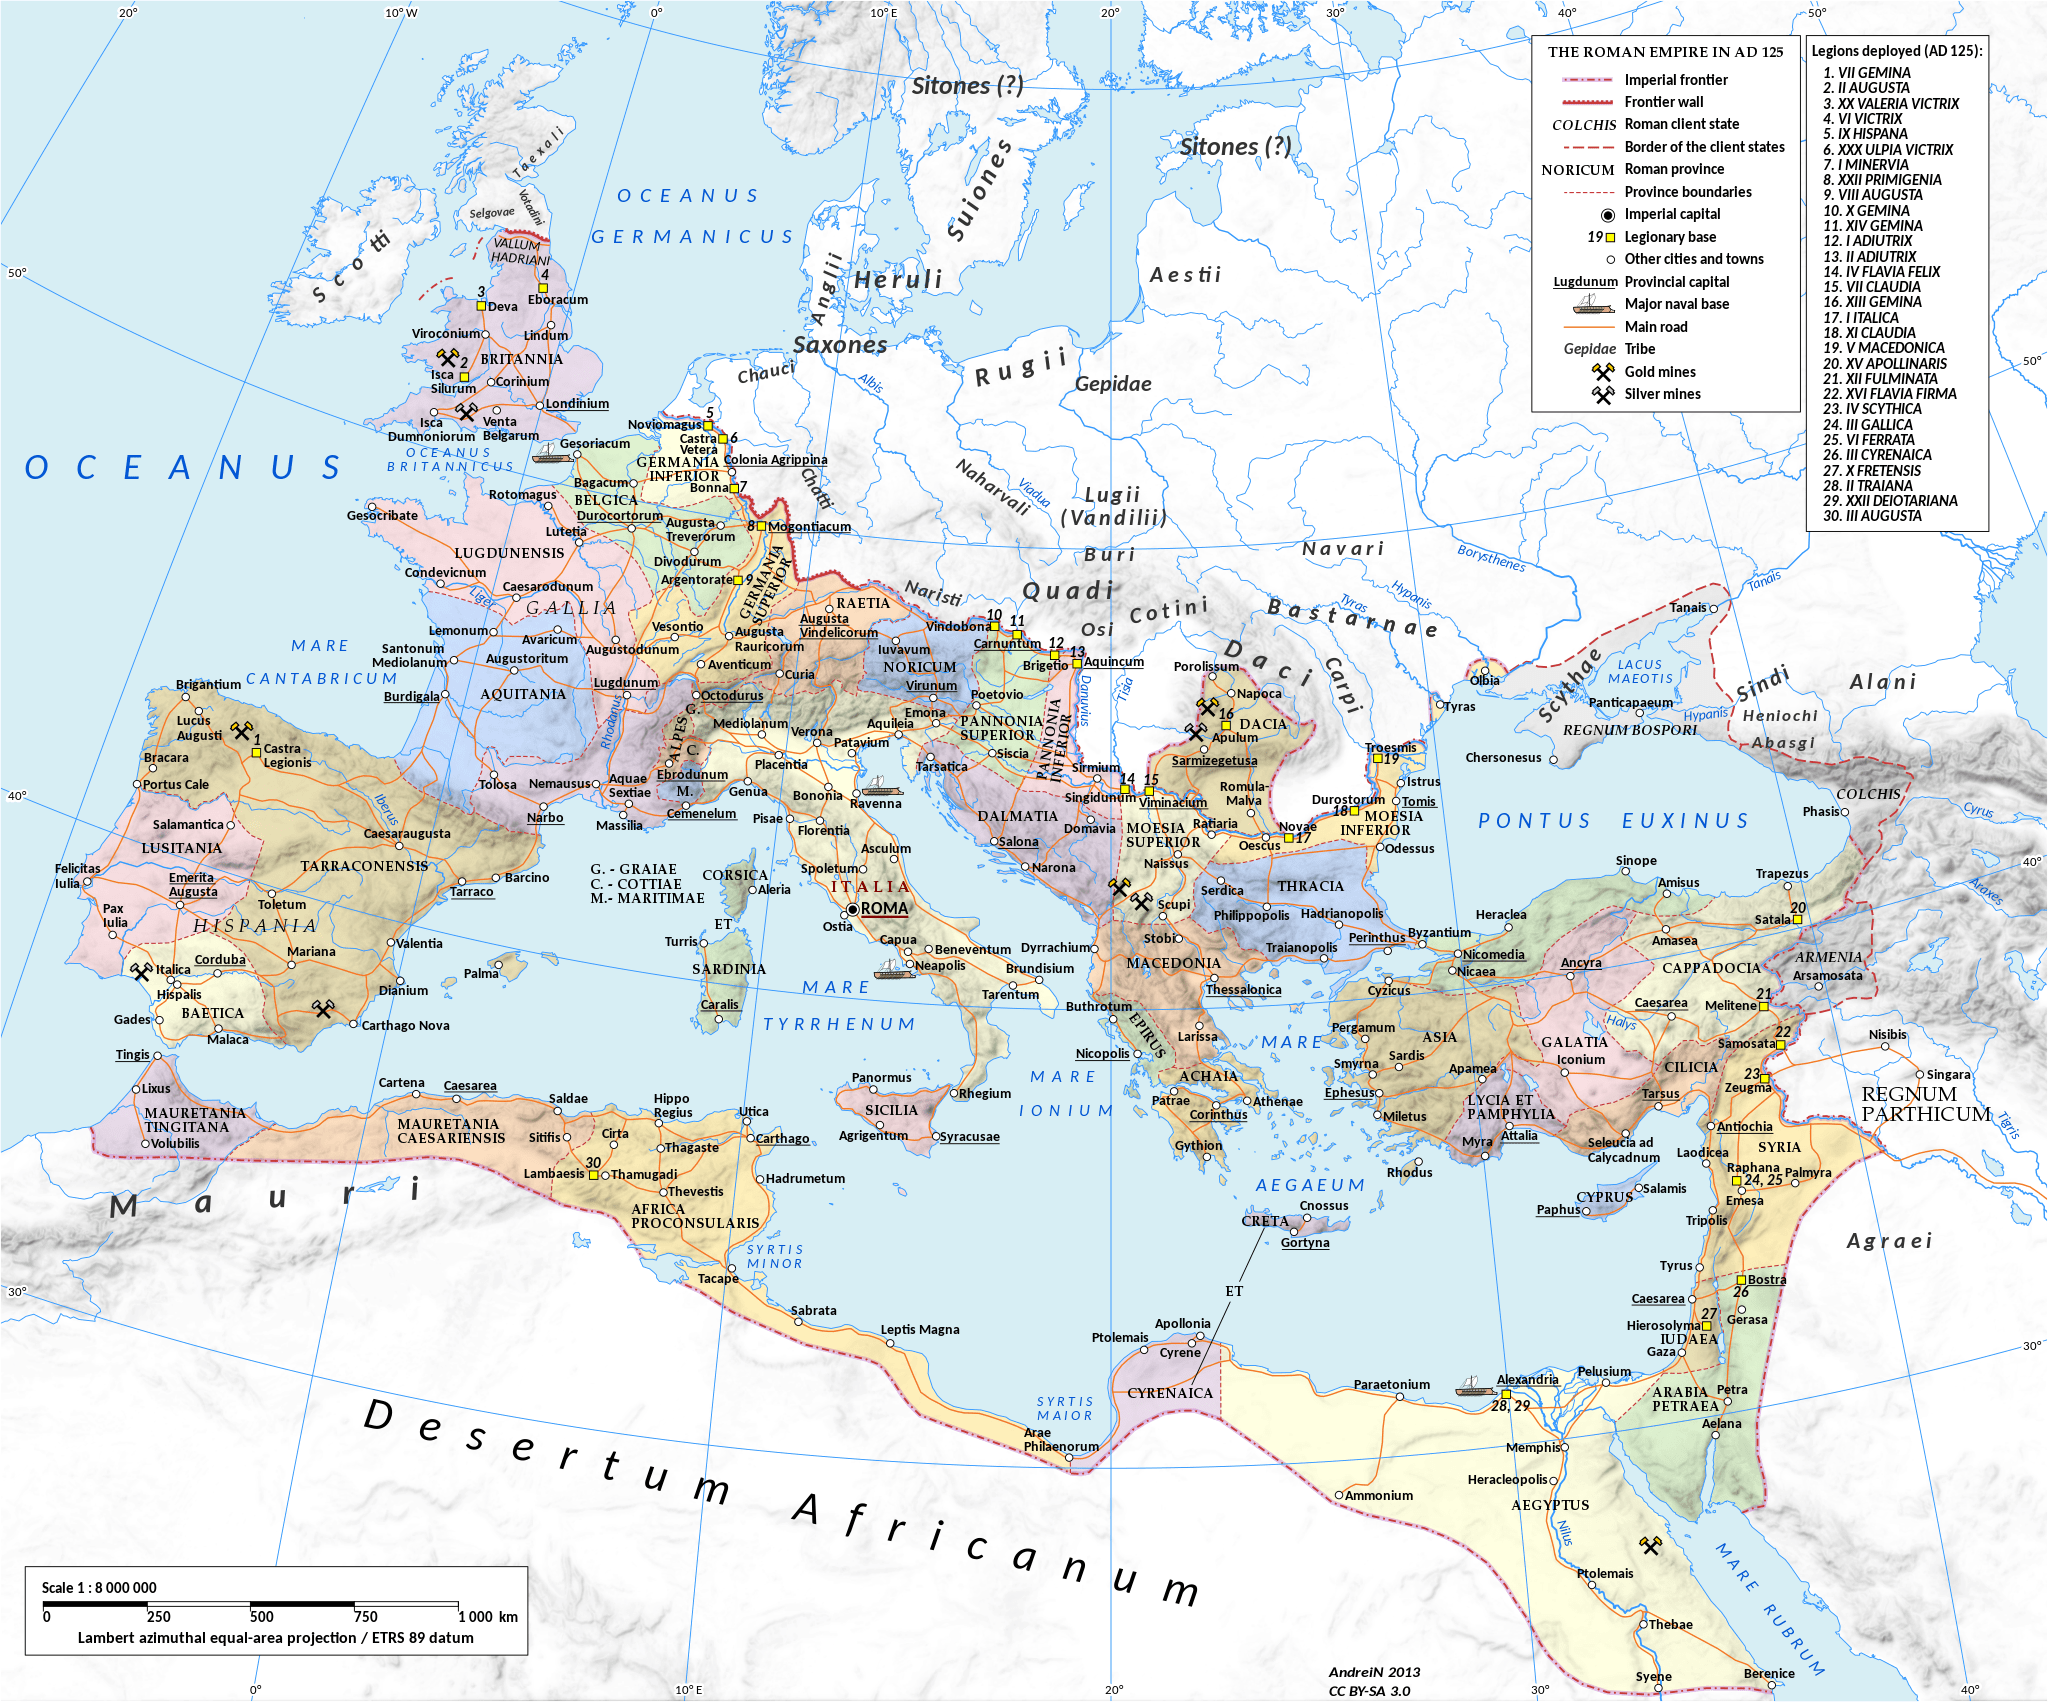 Mapa del Imperio Romano: Roma, Italia, Imperio Occidental y Oriental